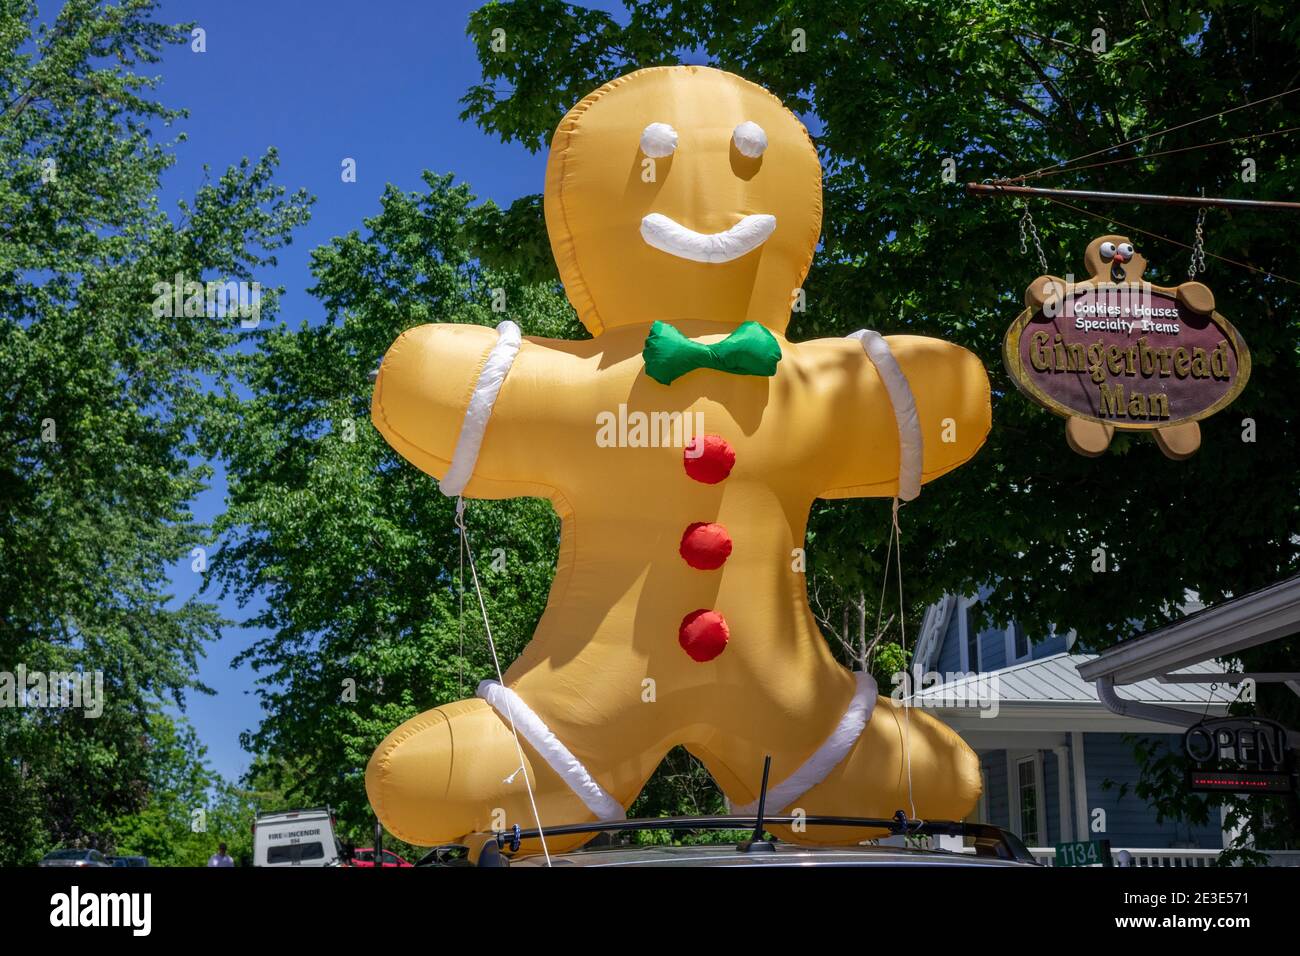 Riese Aufblasbare Lebkuchen Mann Sat auf dem Dach EINES Car Advertising The Gingerbread Man Shop In Manotick Ontario Canada Sommerzeit Stockfoto